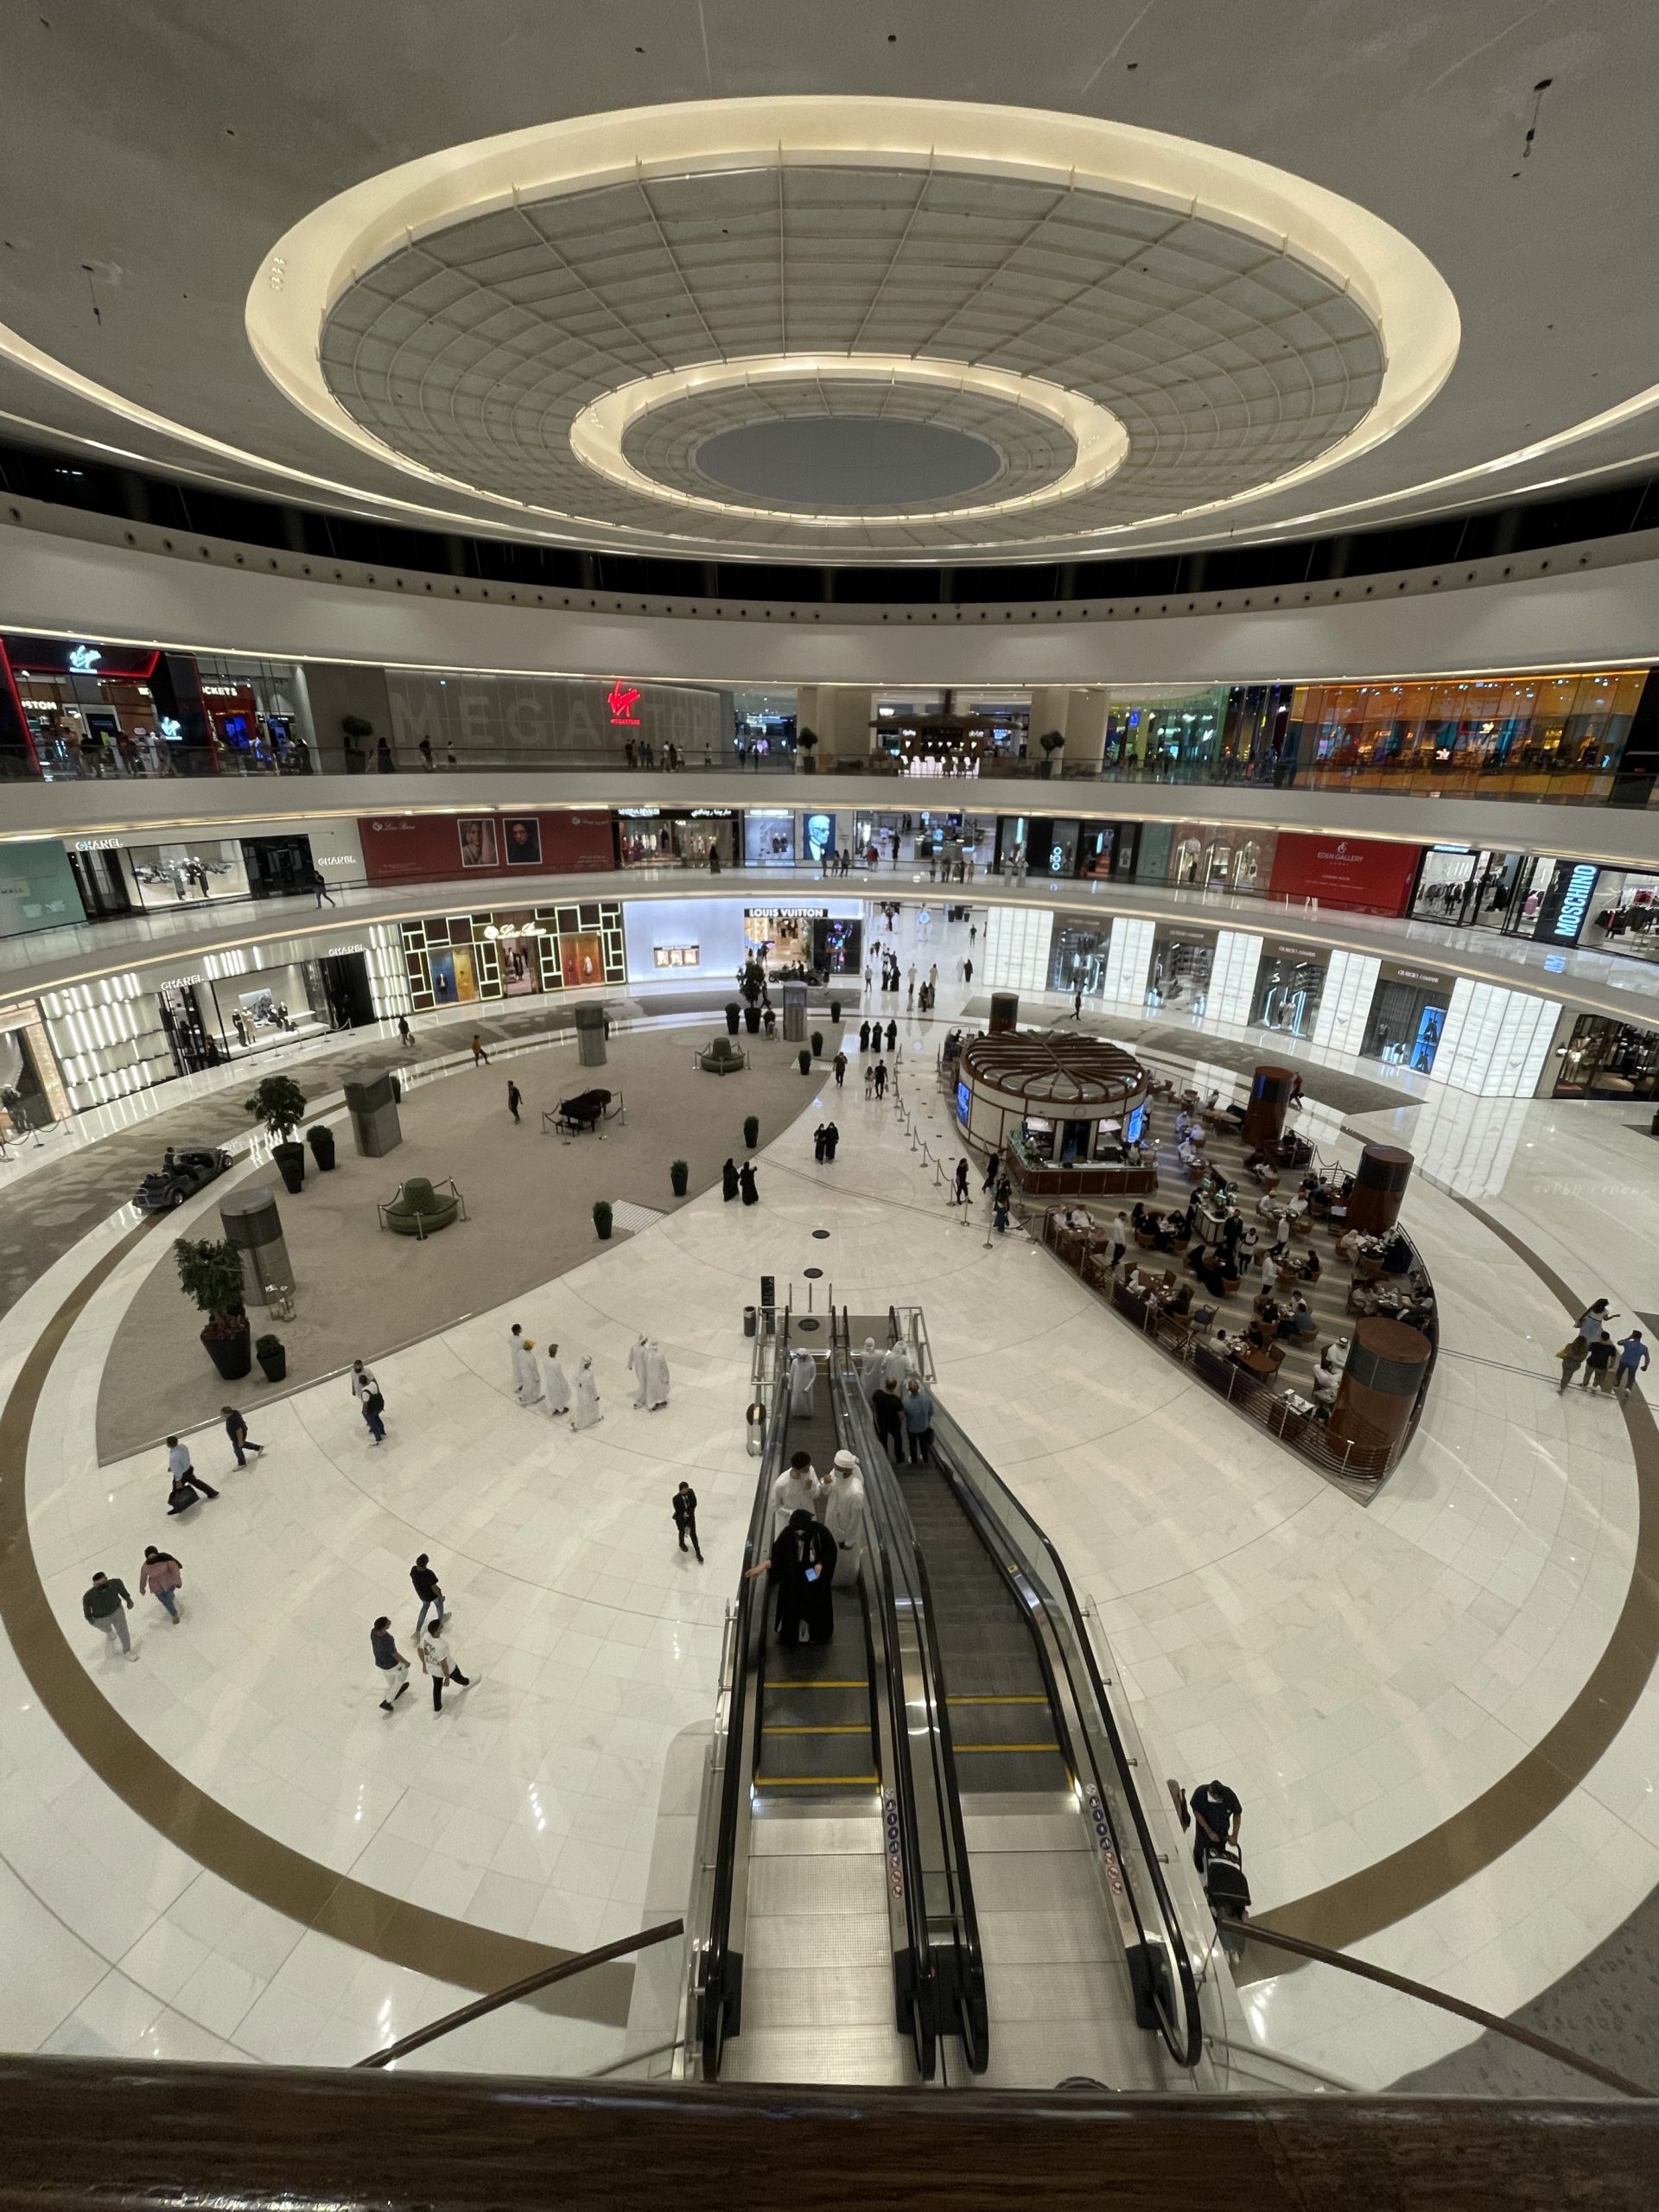 Vue de l’intérieur du plus grand centre commercial du monde, le Dubai Mall. Il y a 3 étages sur la photo.